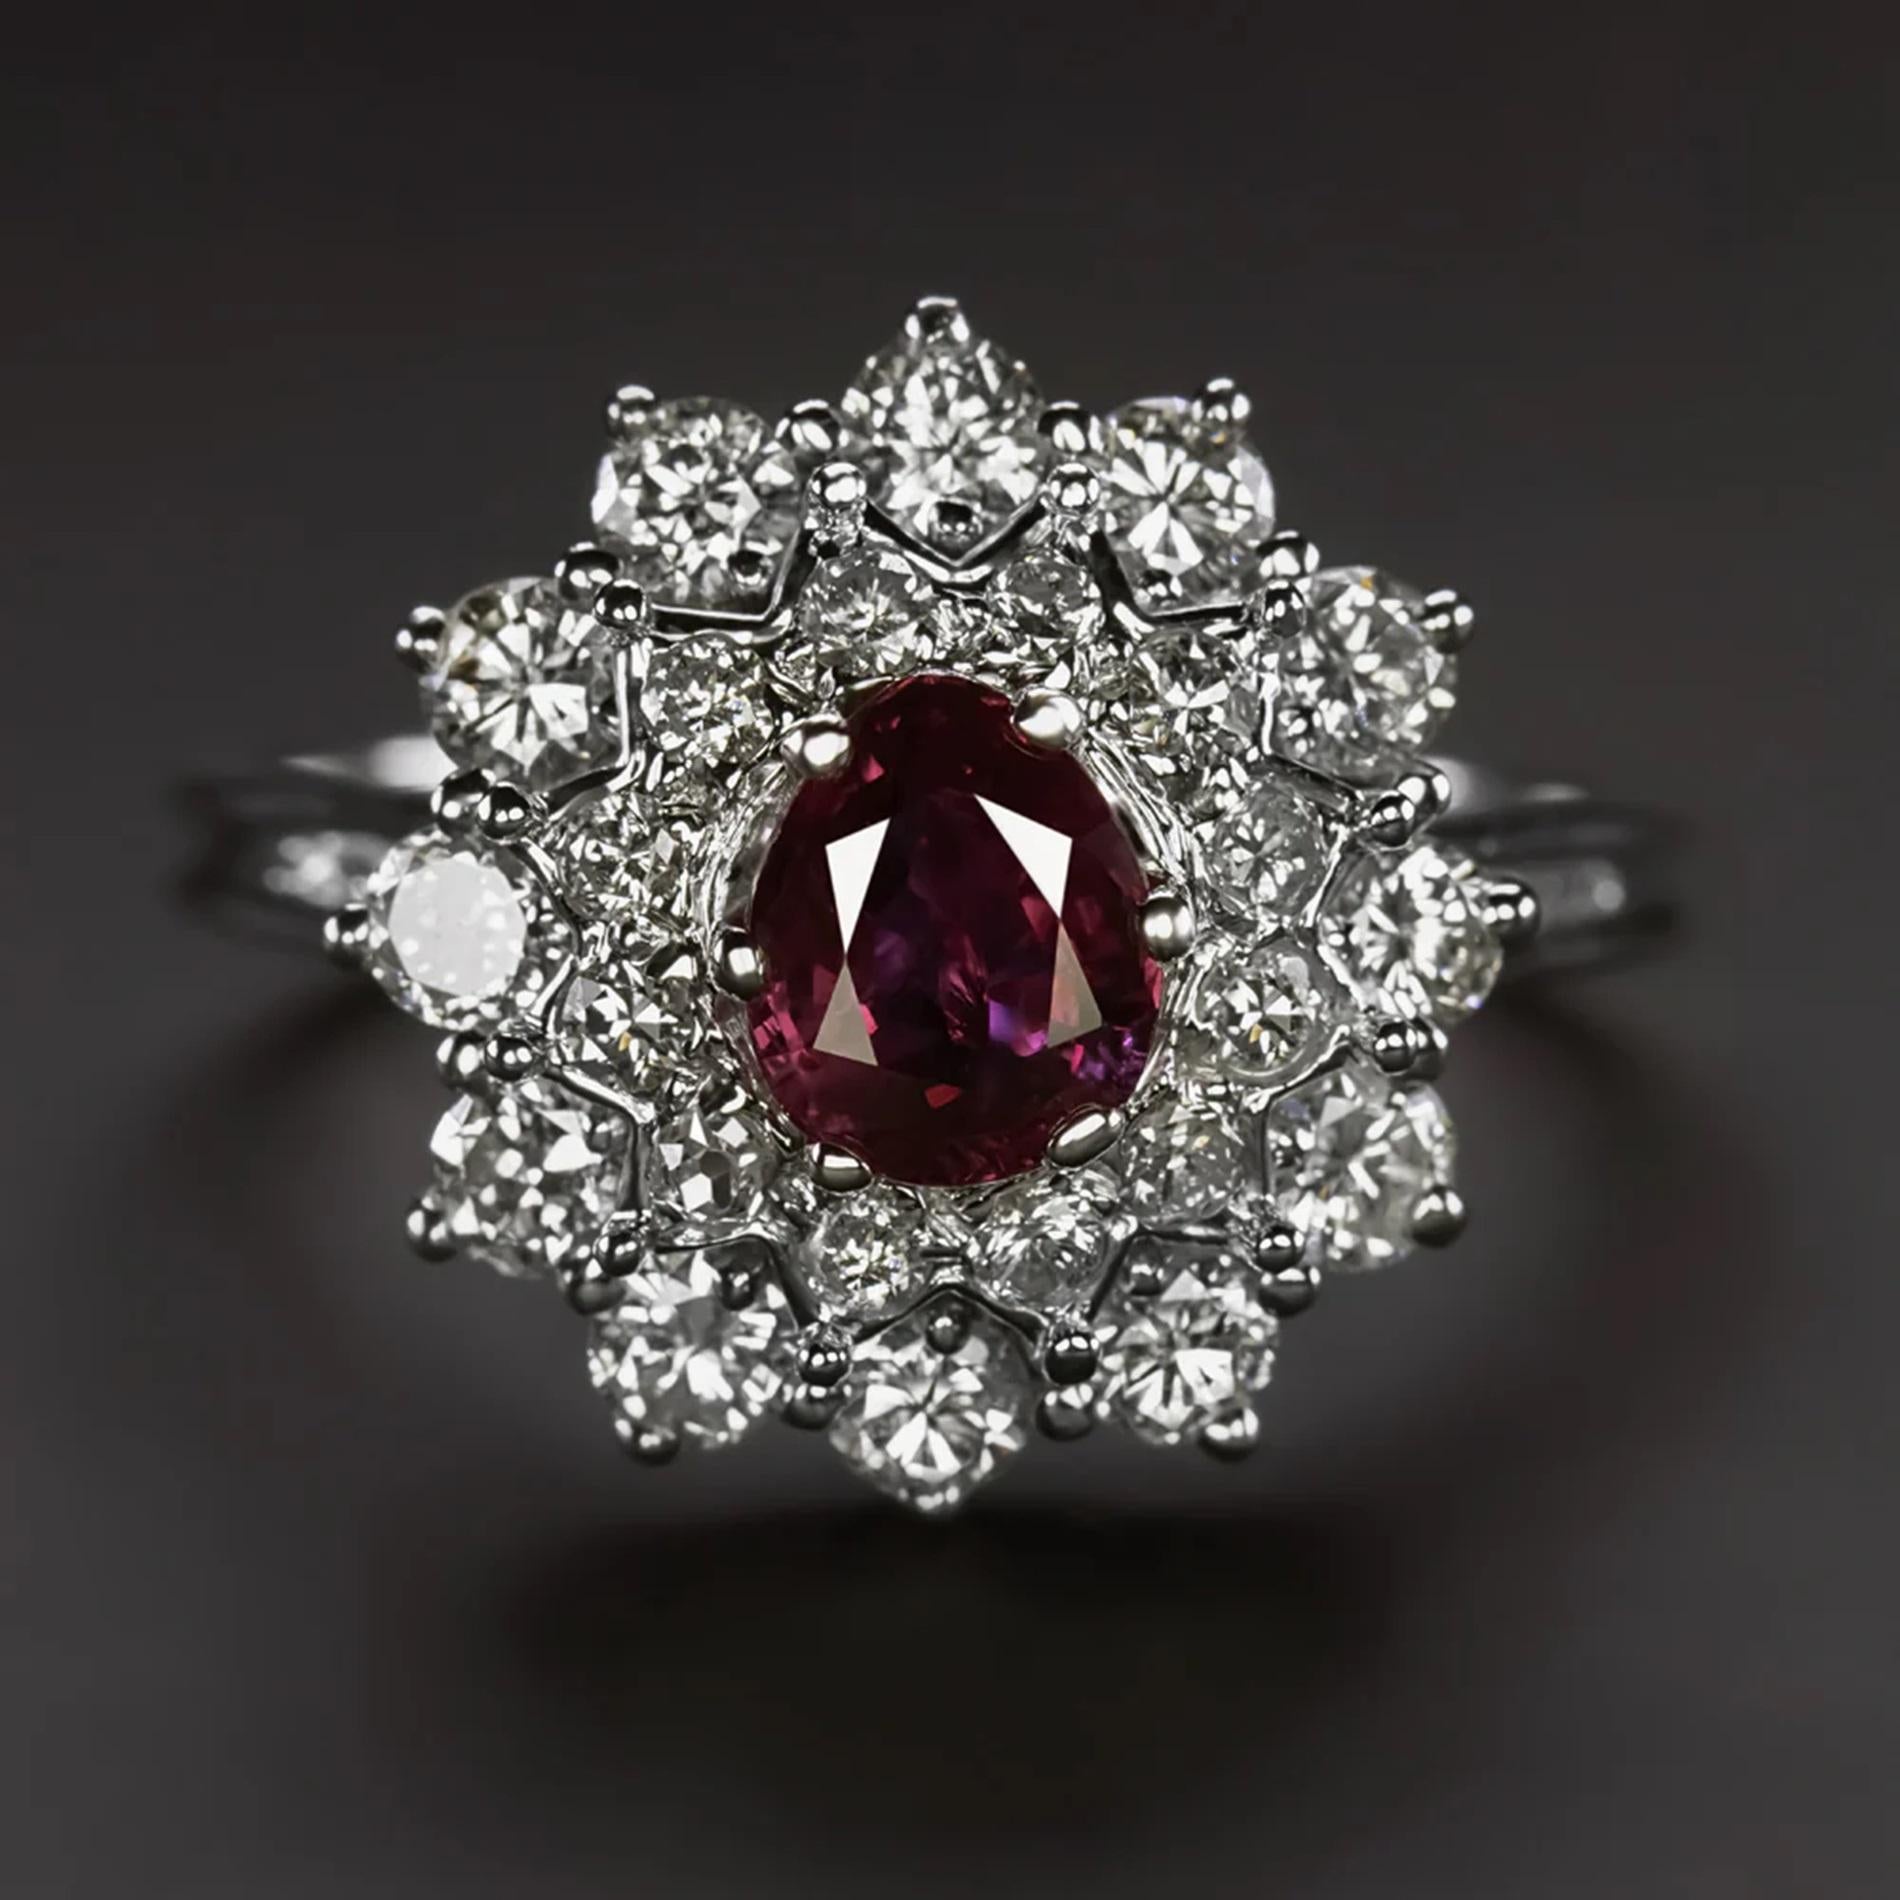 Cette bague en rubis et diamants séduit par son design époustouflant, avec un rubis brillant en forme de poire entouré d'un double halo vibrant de diamants. Cette pièce exquise attire l'attention par sa taille et son impact.

Les caractéristiques